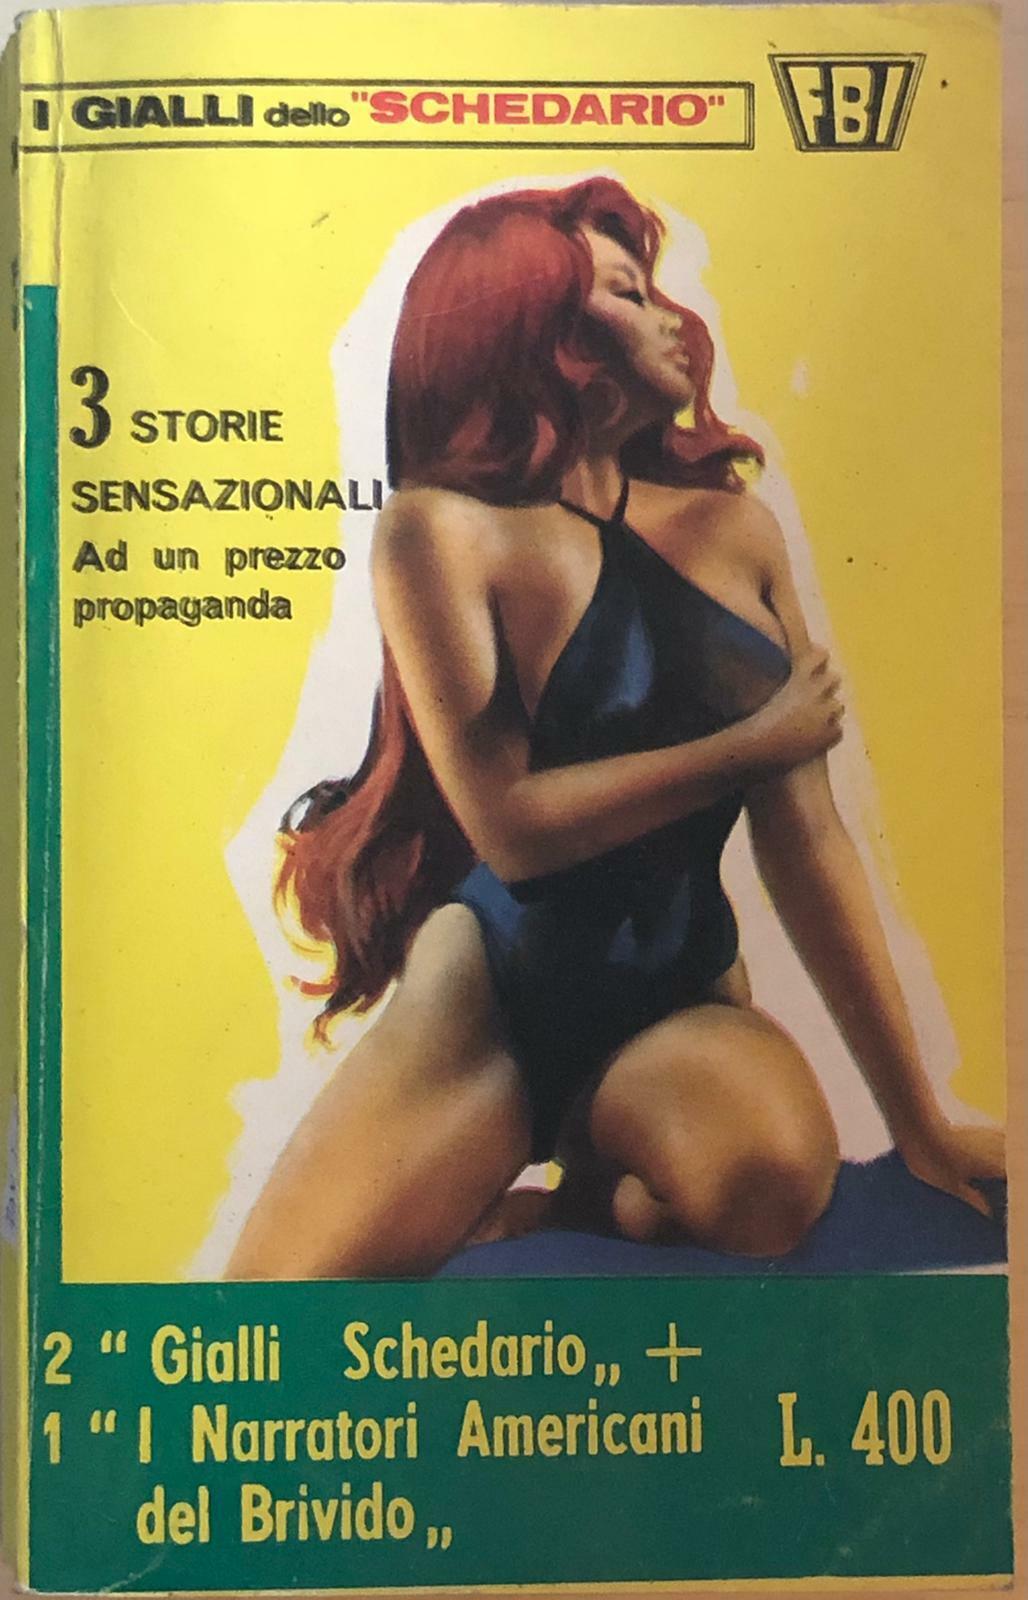 I gialli dello Schedario 24 di Aa.vv., 1973, Edizioni Wamp